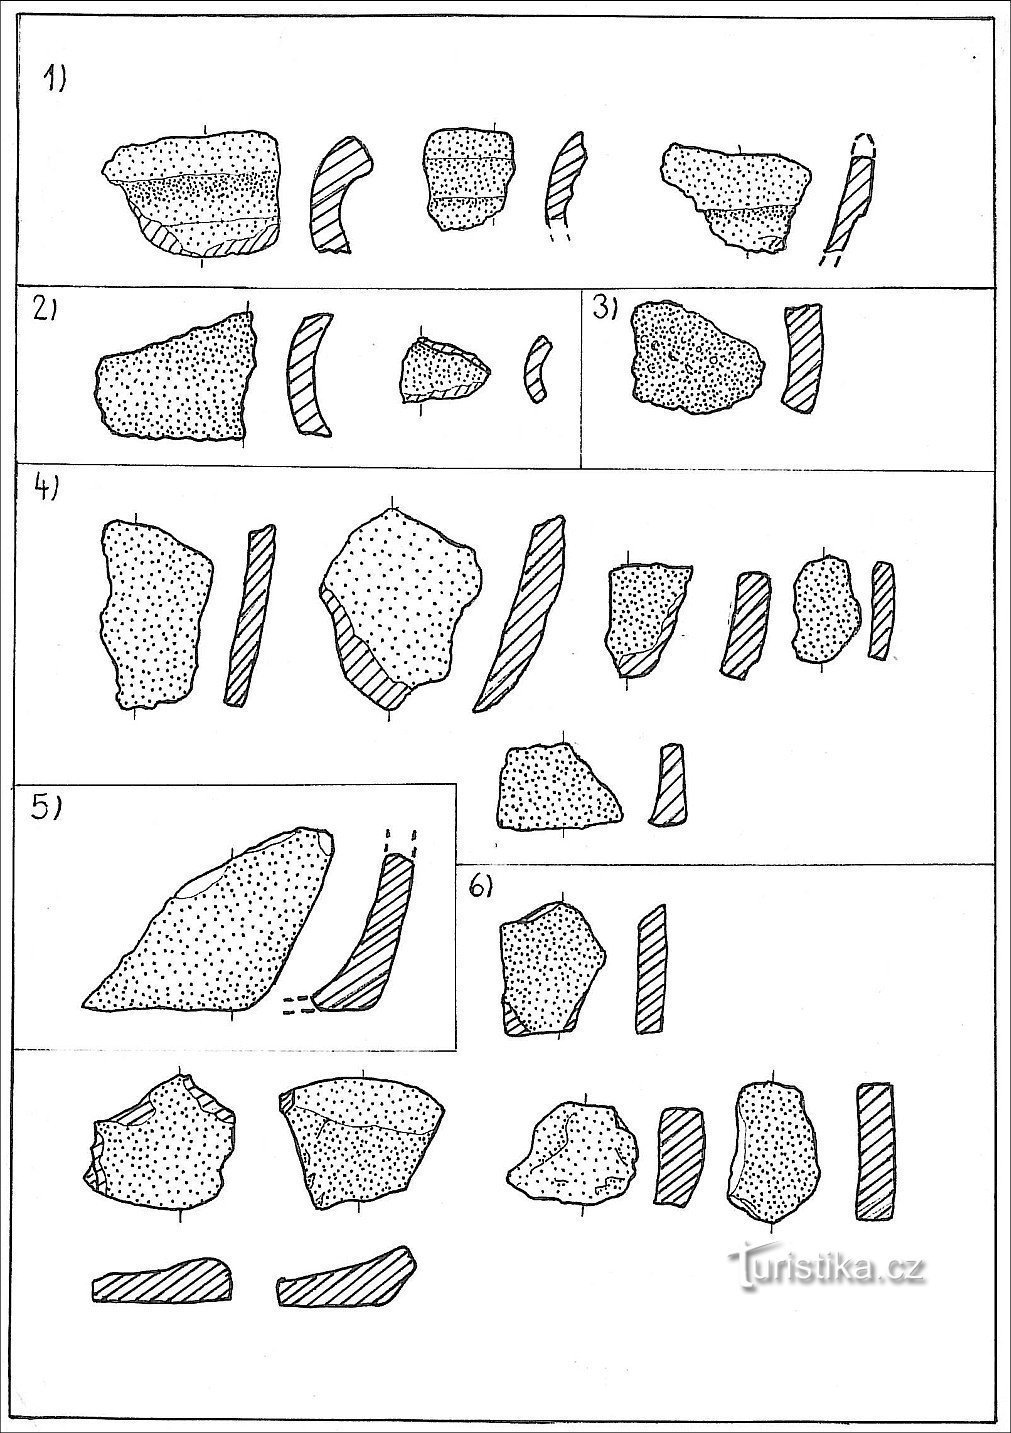 esempi di ceramiche di fortezze; 1) bordi, 2) gole, 3) spalle, 4) corpo, 5) base, 6) fondo